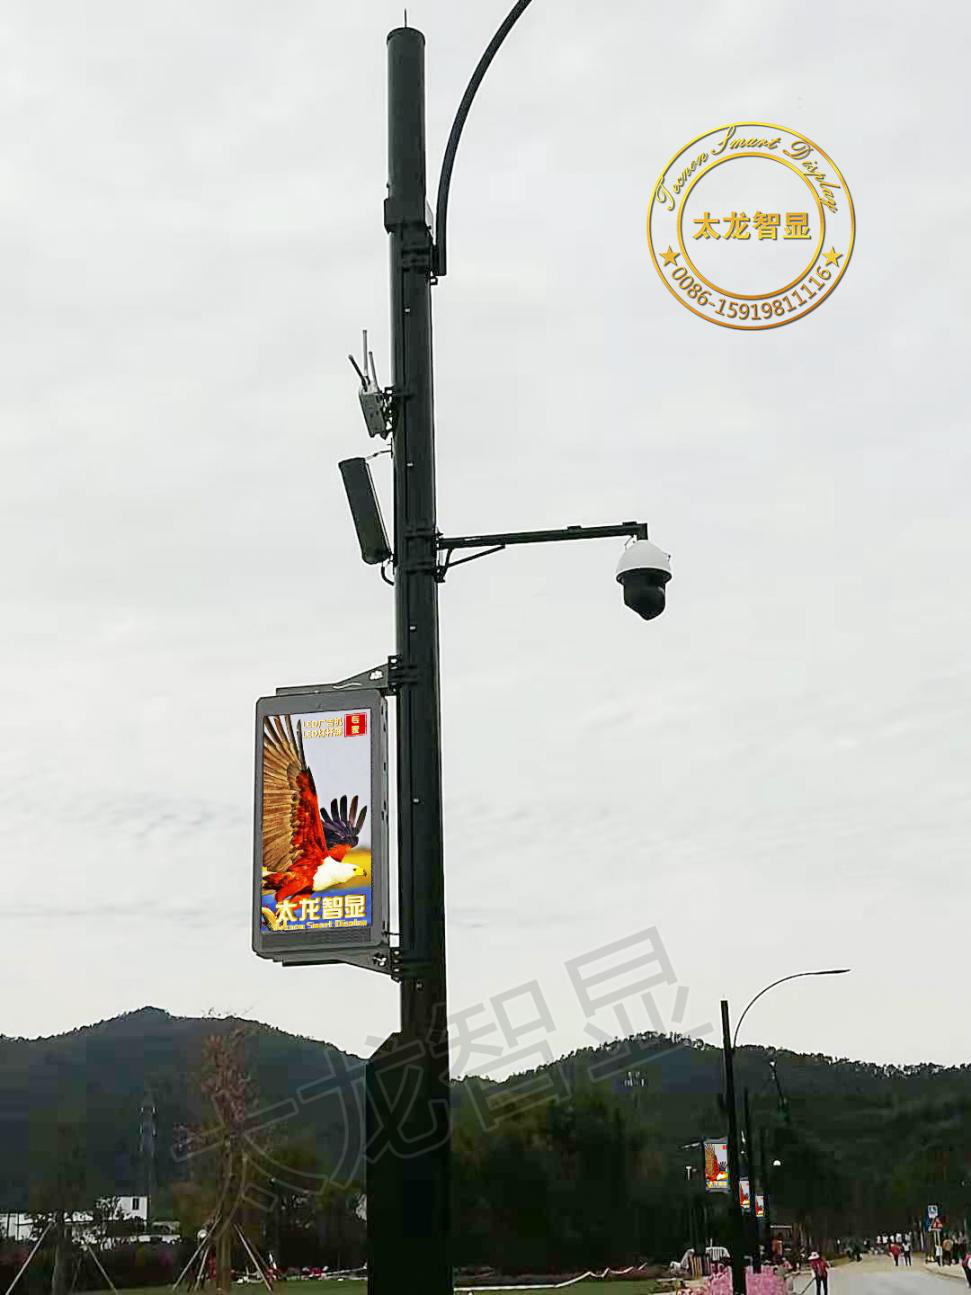 LED灯杆屏|智慧灯杆屏|立柱广告机|LED广告机|智慧路灯屏|灯杆广告屏|灯杆屏